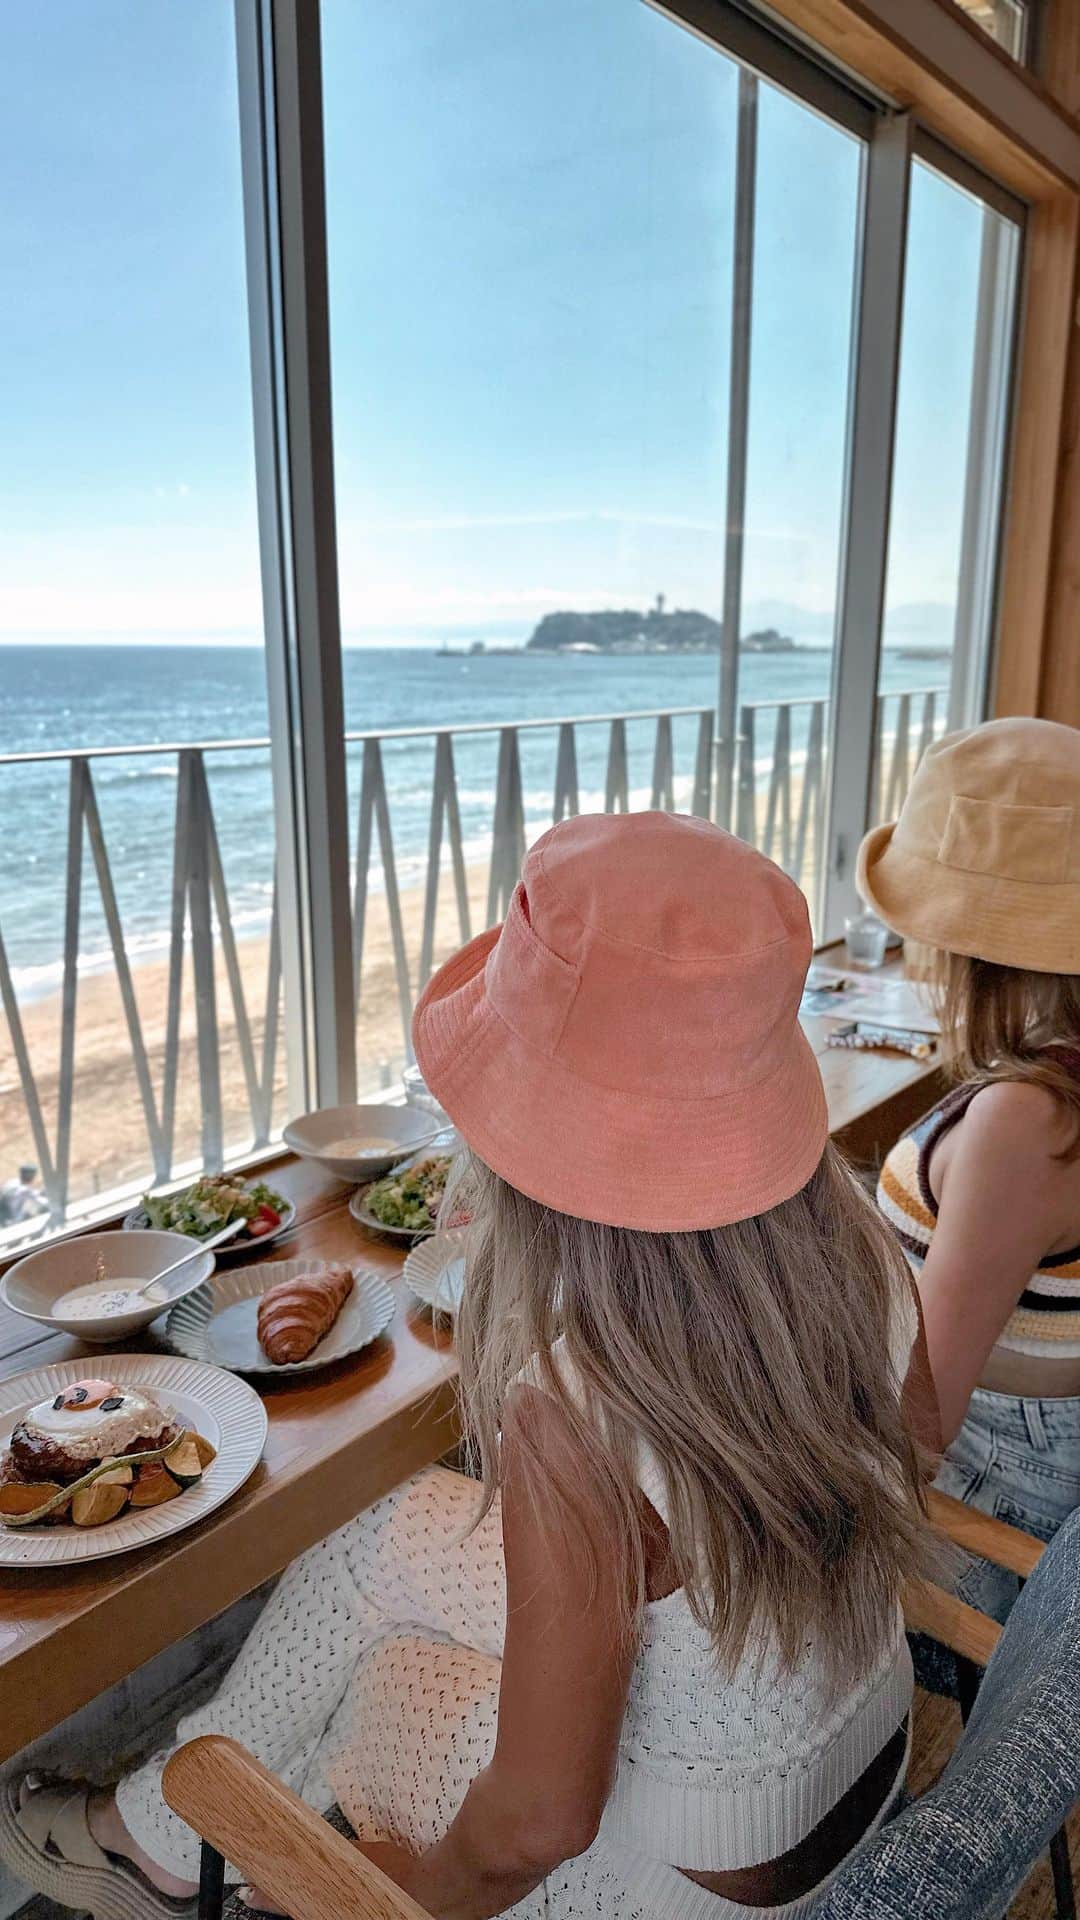 AKKOのインスタグラム：「𝗲𝘀𝗽𝗿𝗲𝘀𝘀𝗼 𝗗 𝗪𝗼𝗿𝗸𝘀 七里ガ浜🥞🌴 ・ 私のお気に入りの Ocean viewカフェは "名物トリュフロコモコ"や ふわふわの "七里ヶ浜パンケーキ"が 人気のカフェ＆レストラン @edw_shichirigahama  鎌倉七里ガ浜に @taaaa_chan24 と 行ってきたよー🥰❤️ たぁちゃんとがこっち来た時に 行きたい場所行きまくって めっちゃ楽しかった🥹✌🏾 ・ 渋谷や池袋、恵比寿などの都内店は有名だよね❤️ ・ 天使のクロワッサン🥐が めちゃくちゃ美味しくて サクサクのふーわふわで  何個でもイケちゃうよ🤭‼️  メニューはどれを食べても 本当に美味しくて大満足でした🤗❤️ ・ 私が行った時は真夏で風が強かったから室内だったけど、 屋上テラスは富士山🗻も見えるし、 オーシャンビューのこのロケショーンが最高すぎるの🥺🌴  ワンコ🐶は 小型犬ならオッケーみたいだよー‼️ ・ 七里ガ浜周辺のカフェを探してたら 是非行ってみてねー🤗❤️  _________________________________ ・ 『𝗲𝘀𝗽𝗿𝗲𝘀𝘀𝗼 𝗗 𝗪𝗼𝗿𝗸𝘀 七里ガ浜』 ・ 𝗚𝗼𝗼𝗴𝗹𝗲 𝗺𝗮𝗽𝘀 の🎙で エスプレッソ ディー ワークスで すぐ出てくるよ🤗 ・ ADDRESS 鎌倉市七里ガ浜1-4-11 トライアングル七里ガ浜2階-B  電話番号	090-7874-9572 営業時間	8:00～19:00 予約	予約不可 利用条件	店内可（小型犬のみ） 駐車場  建物裏線路側にある 「 D-Parking トライアングル七里ガ浜」の🅿️は 4台駐車可 ただ、提携割引サービスはないので 「七里ガ浜海岸駐車場(340台）」に 停めて行くのががおすすめかなー💁🏾‍♀️✨  ✔︎D-Parkingトライアングル七里ガ浜 15分200円  ________________________________ ・ ・ また 湘南オススメカフェ紹介させてね🤗 ・ ・ ・ ・ #ootdfashion #espressodworks  #espressodworks七里ヶ浜  #エスプレッソディーワークス七里ヶ浜  #湘南カフェ  #湘南ランチ  #鎌倉ランチ  #鎌倉カフェ巡り  #湘南カフェ  #湘南カフェ巡り  #鎌倉カフェ  #おしゃれカフェ巡り  #七里ガ浜カフェ  #湘南グルメ #ビーチコーデ #ビーチカジュアル  #海外コーデ  #海外ファッション  #カリフォルニアスタイル  #ボヘミアンコーデ  #バケハコーデ #南国リゾート  #ビーチカフェ  #オーシャンビューカフェ  #女子会ランチ  #ルーフバルコニー  #パノラマビューカフェ #江ノ島一望テラス席  #湘南」